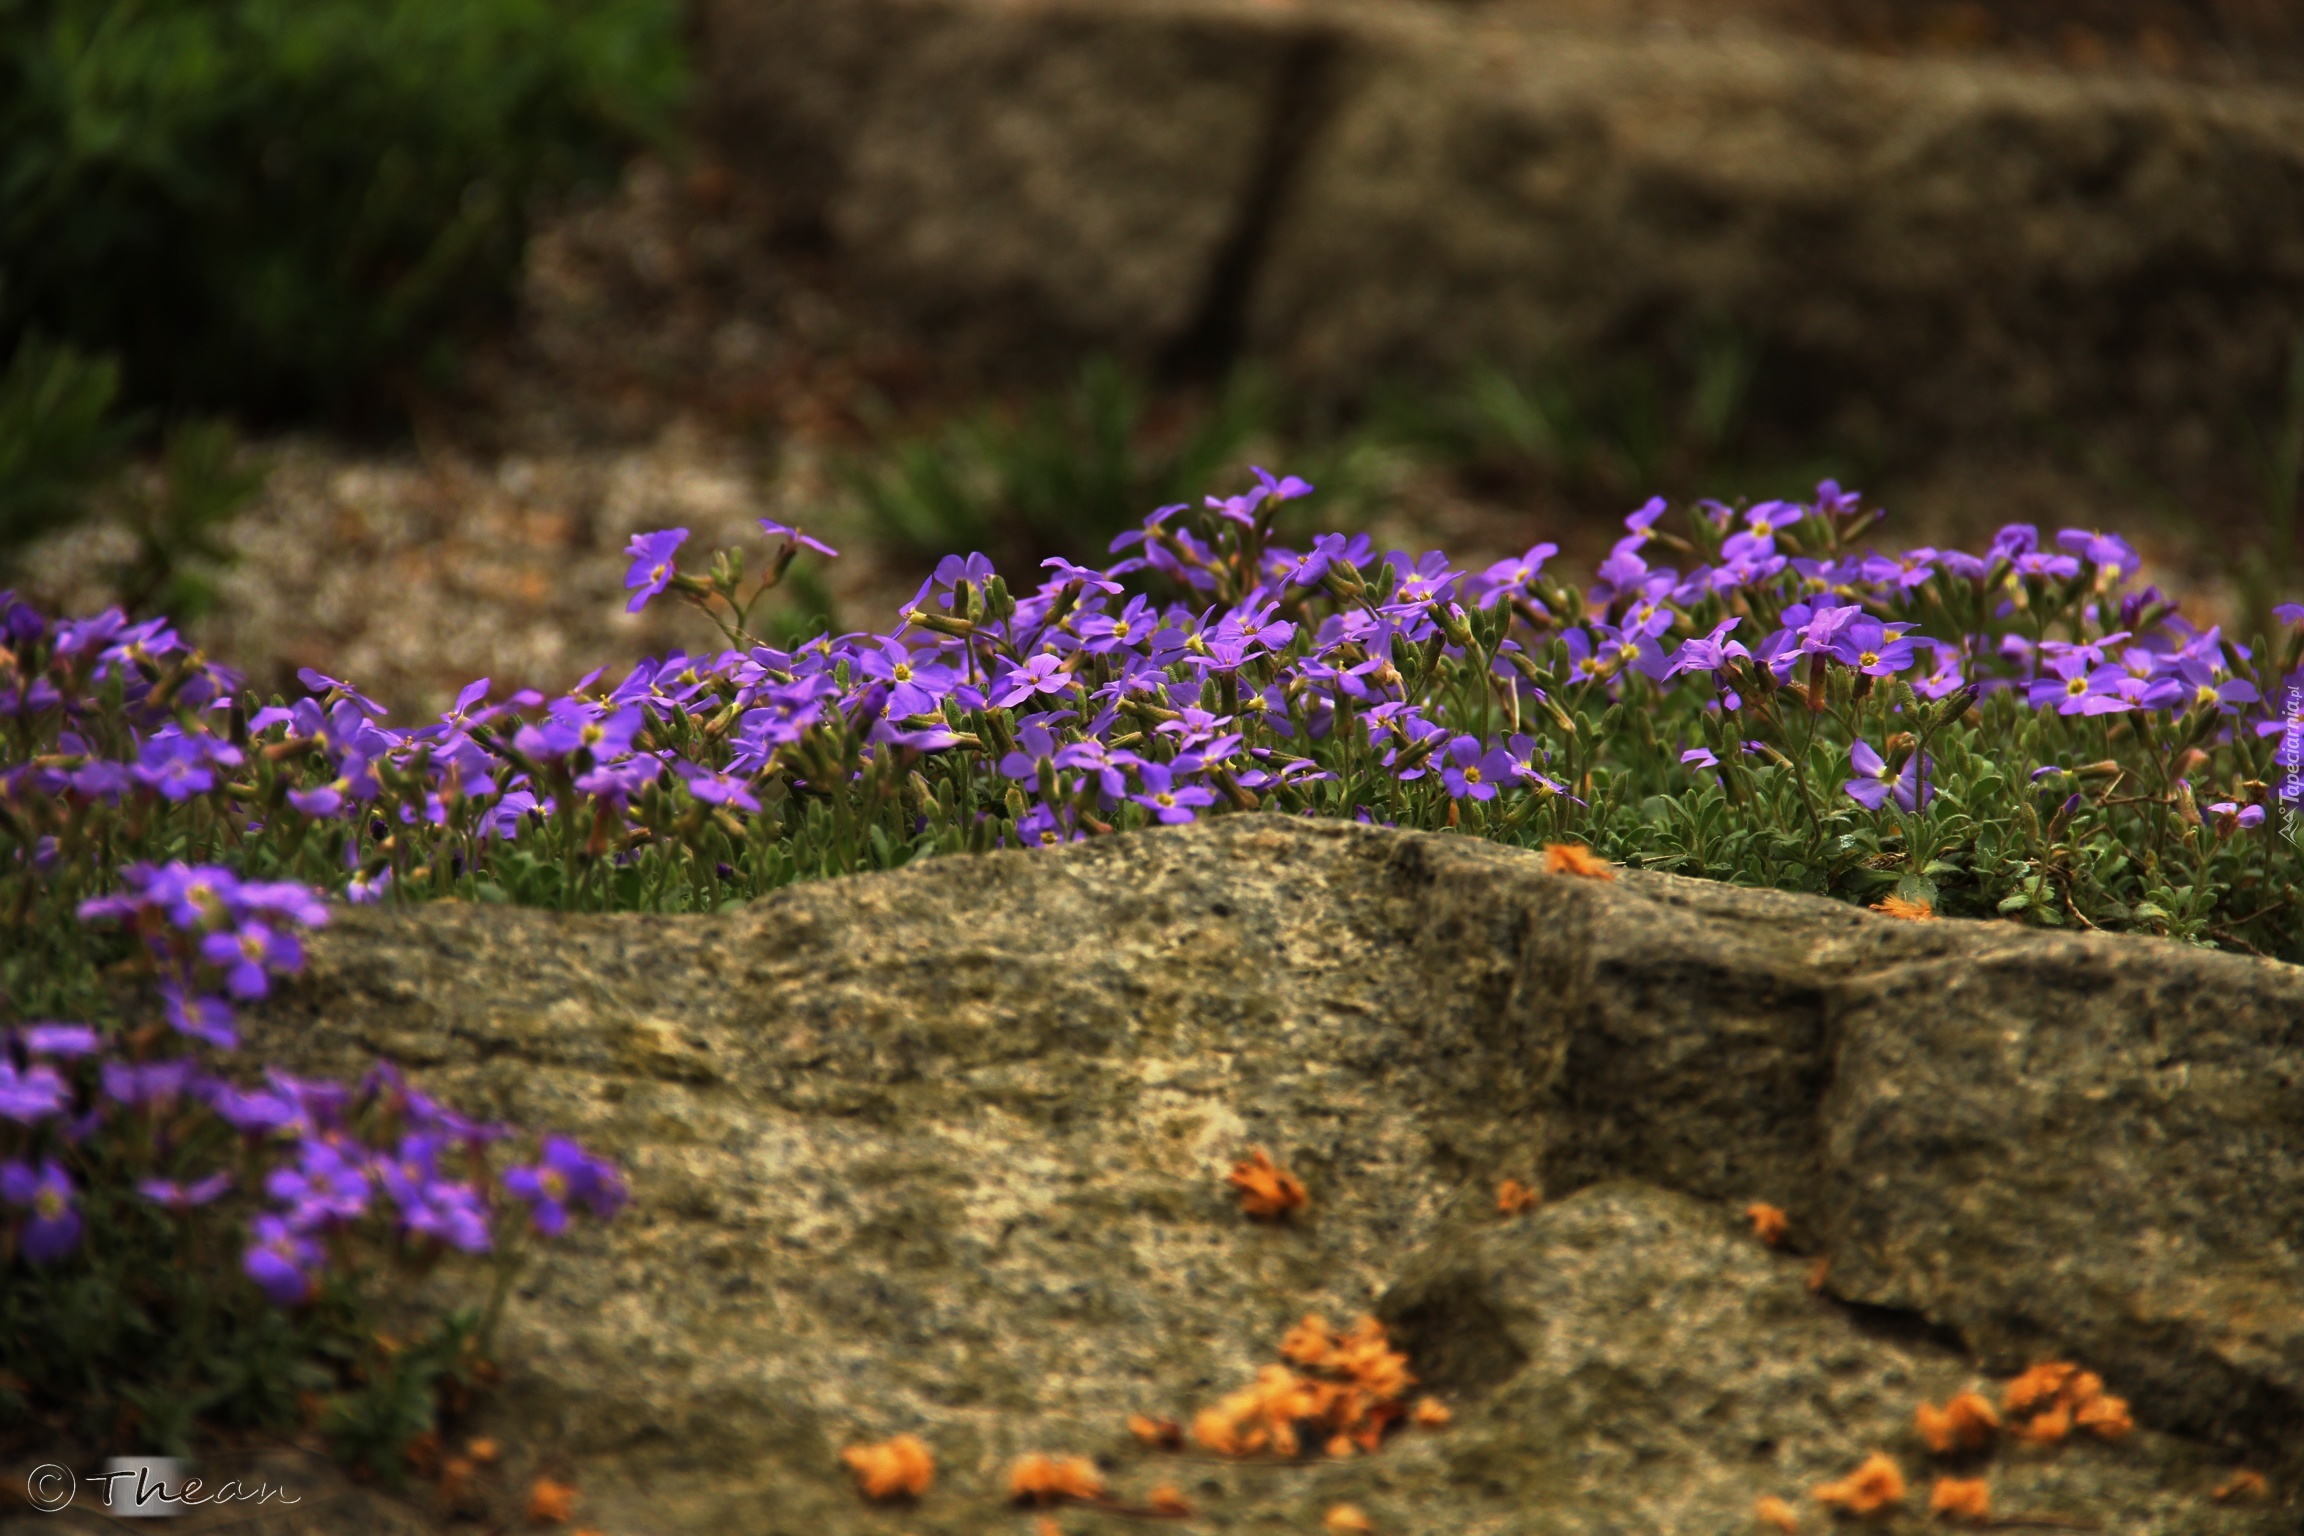 Fioletowe, Kwiaty, Kamienie